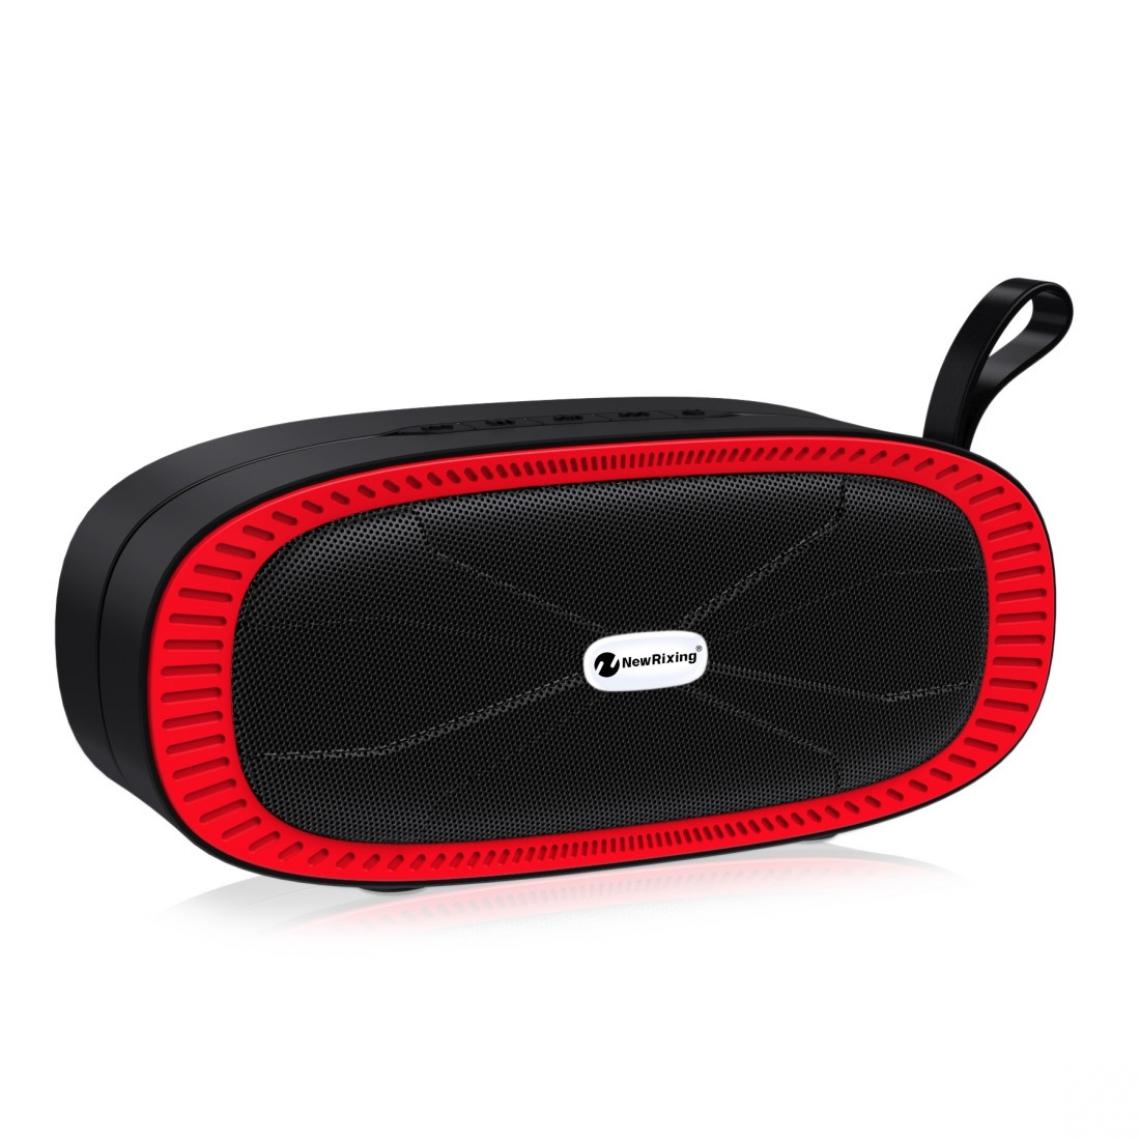 Wewoo - Enceinte Bluetooth NR4022 Haut-parleur stéréo portable avec barre de son surround microphonecarte Micro SD de soutien FM rouge - Enceintes Hifi